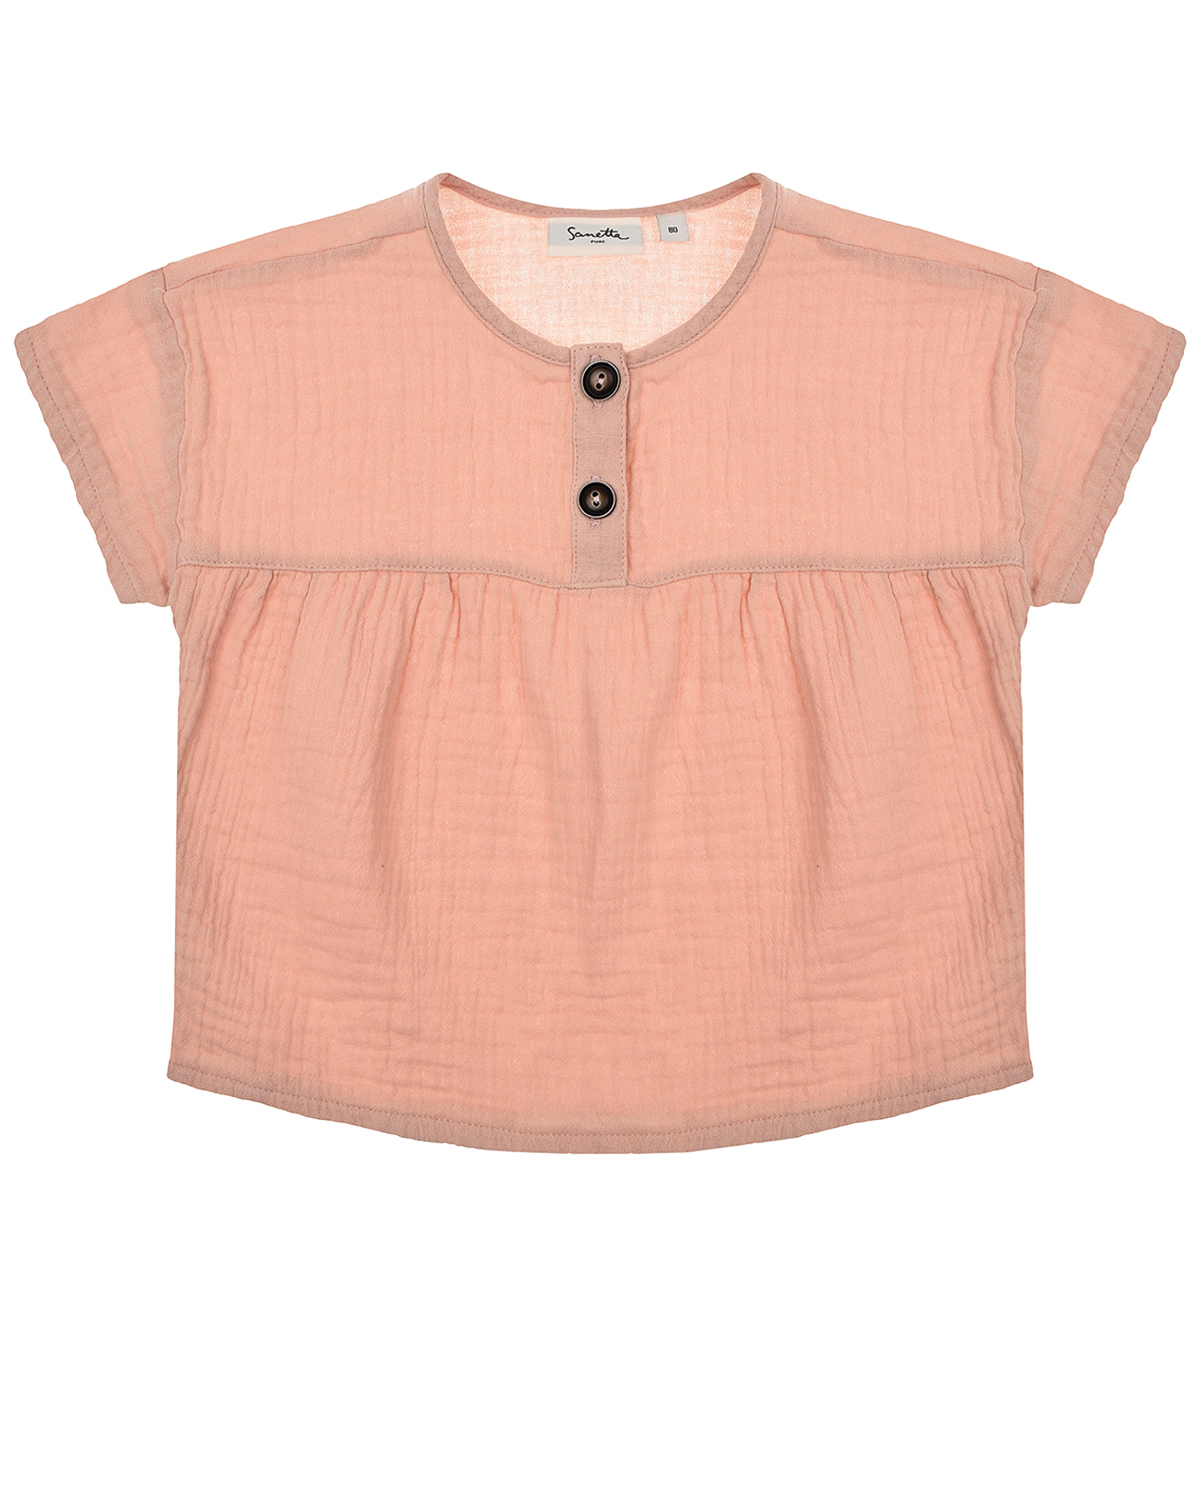 Пудровая футболка из хлопка Sanetta Pure детская, размер 74, цвет розовый - фото 1